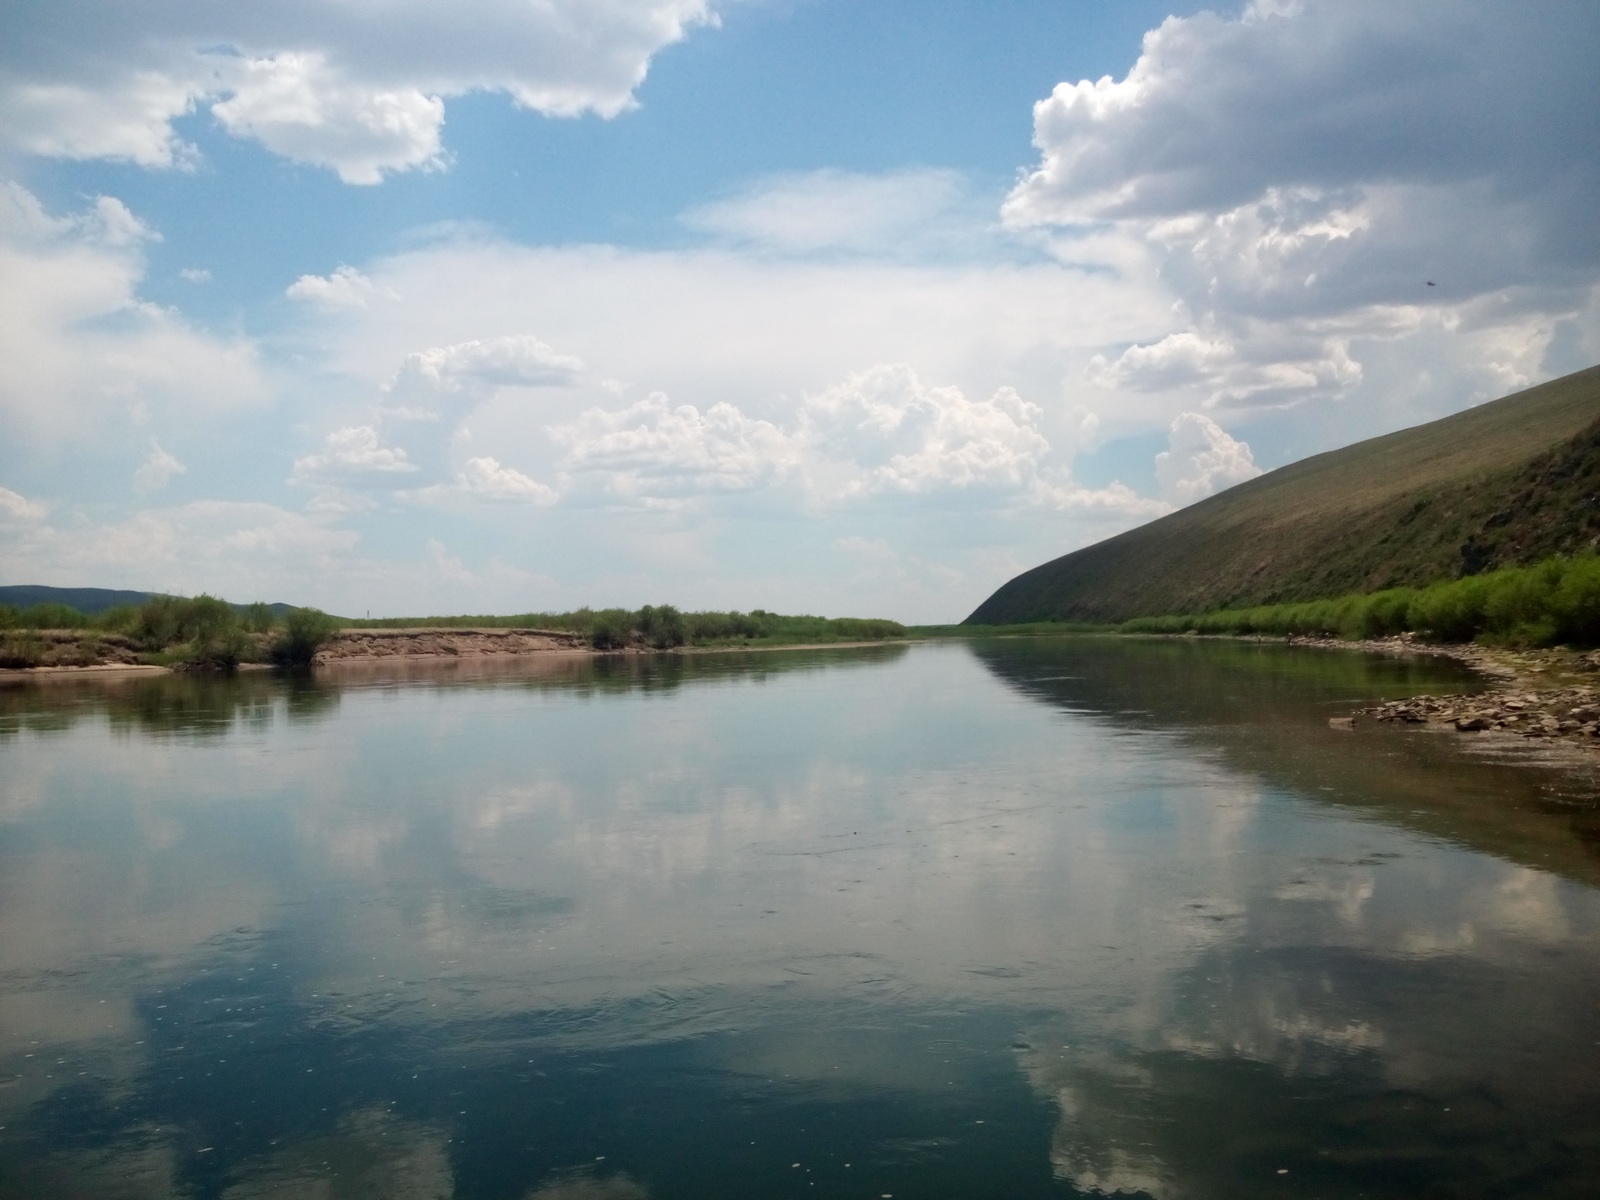 Transbaikalia, Onon river, Olovyannaya village - My, Onon, 